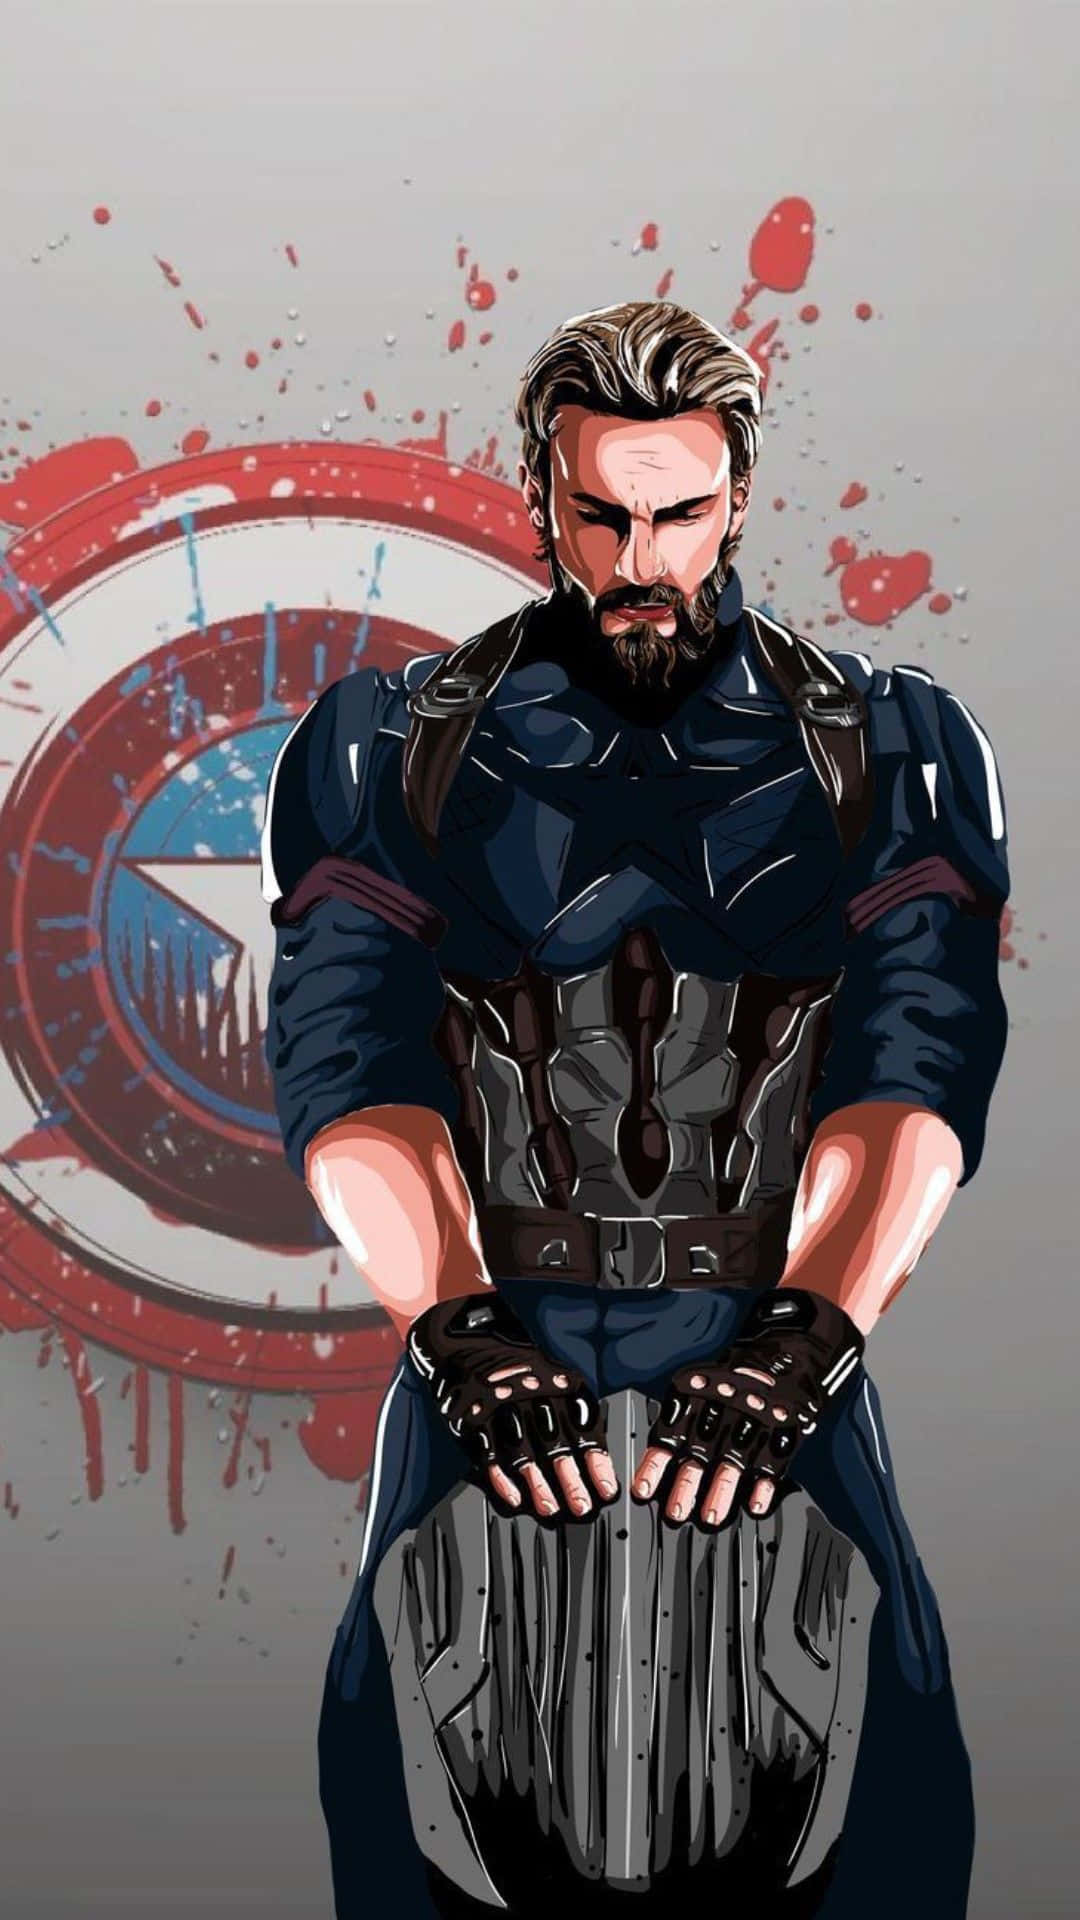 Utentiandroid Di Tutto Il Mondo, Unitevi Sotto La Bandiera Di Captain America.